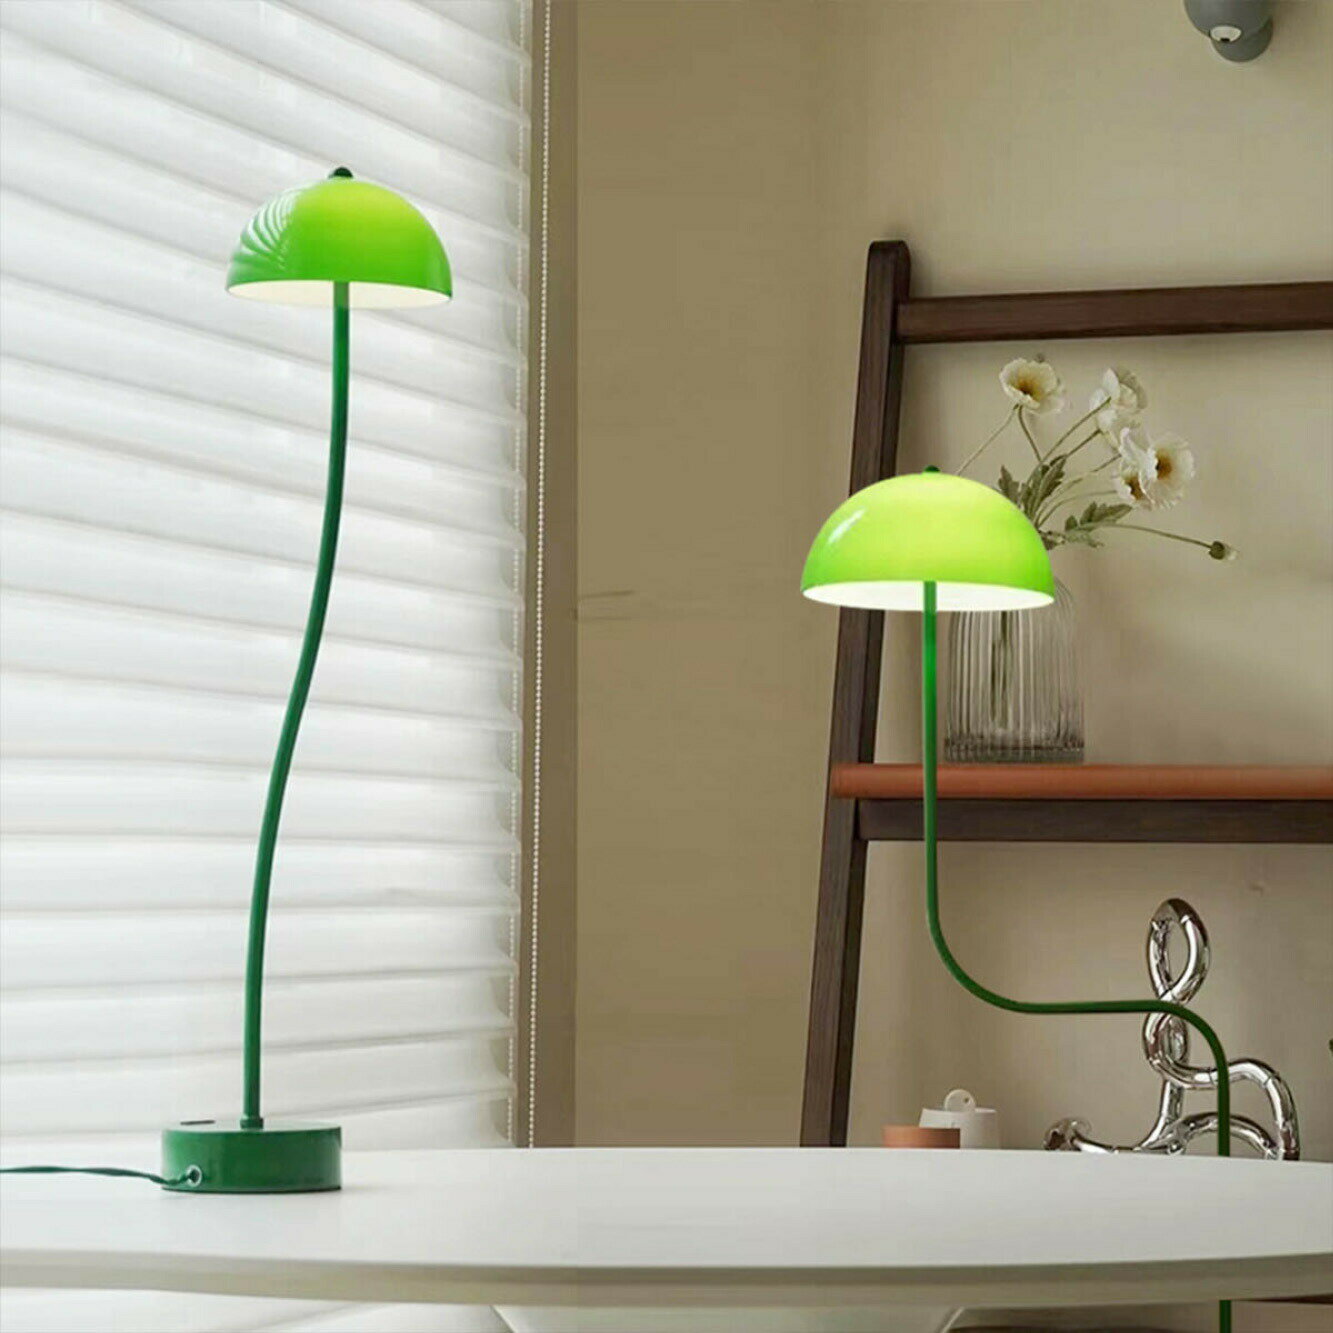 VeroMan ライト テーブルライト グリーン ドーム ランプ みどり 植物の型 ナイトライト 卓上ライト 照明 間接照明 シンプル モダン レトロ 韓国インテリア